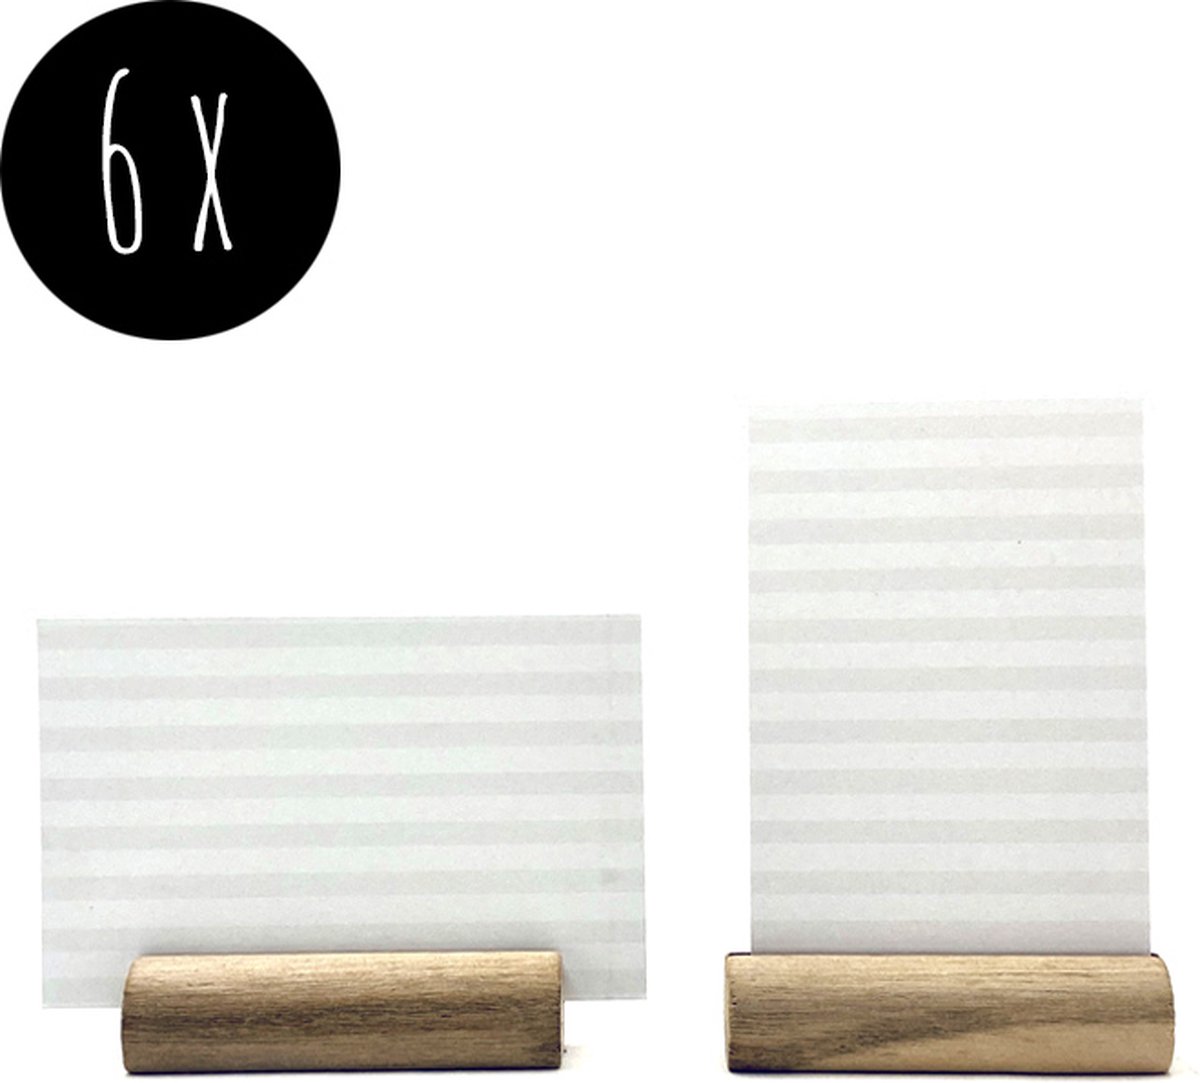 6x kaarthouder | 6 cm | naturel hout  + 12 blanco kaartjes | grijs & wit